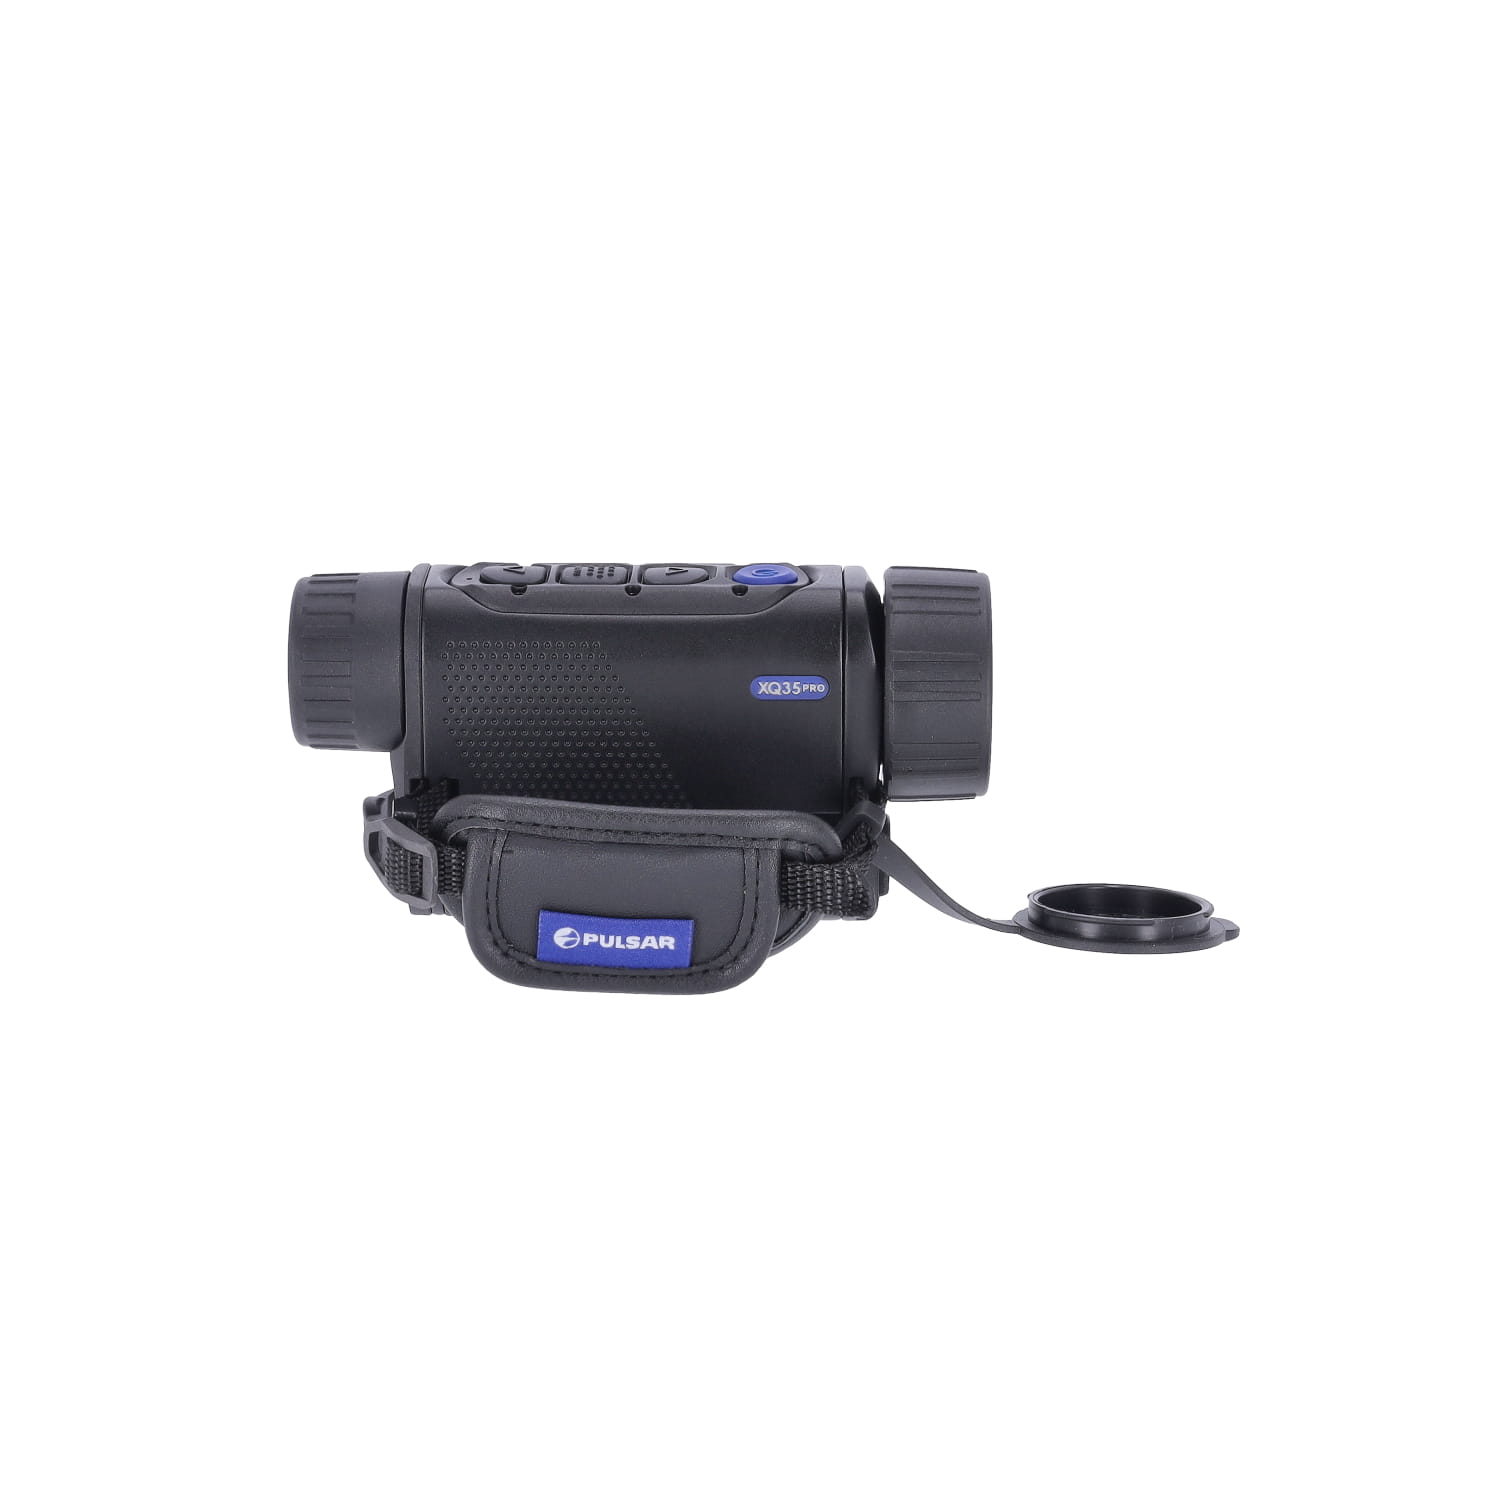 Caméra thermique InfiRay P2 Pro avec une grande précision de la